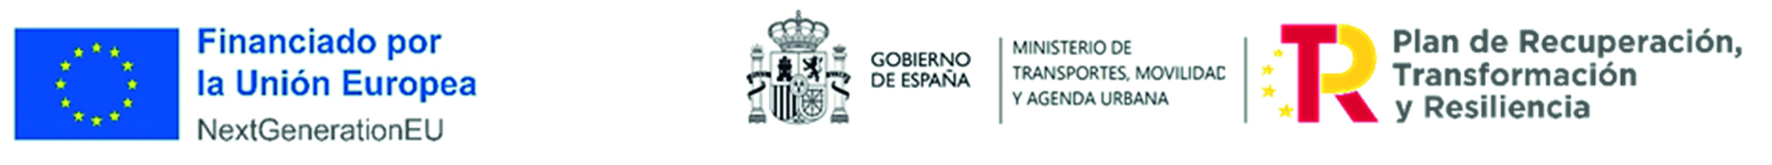 LOGO UNION EUROPEA - GOBIERNO DE ESPAÑA - PLAN DE RECUPERACION, TRANSFORMACION Y RESILIENCIA